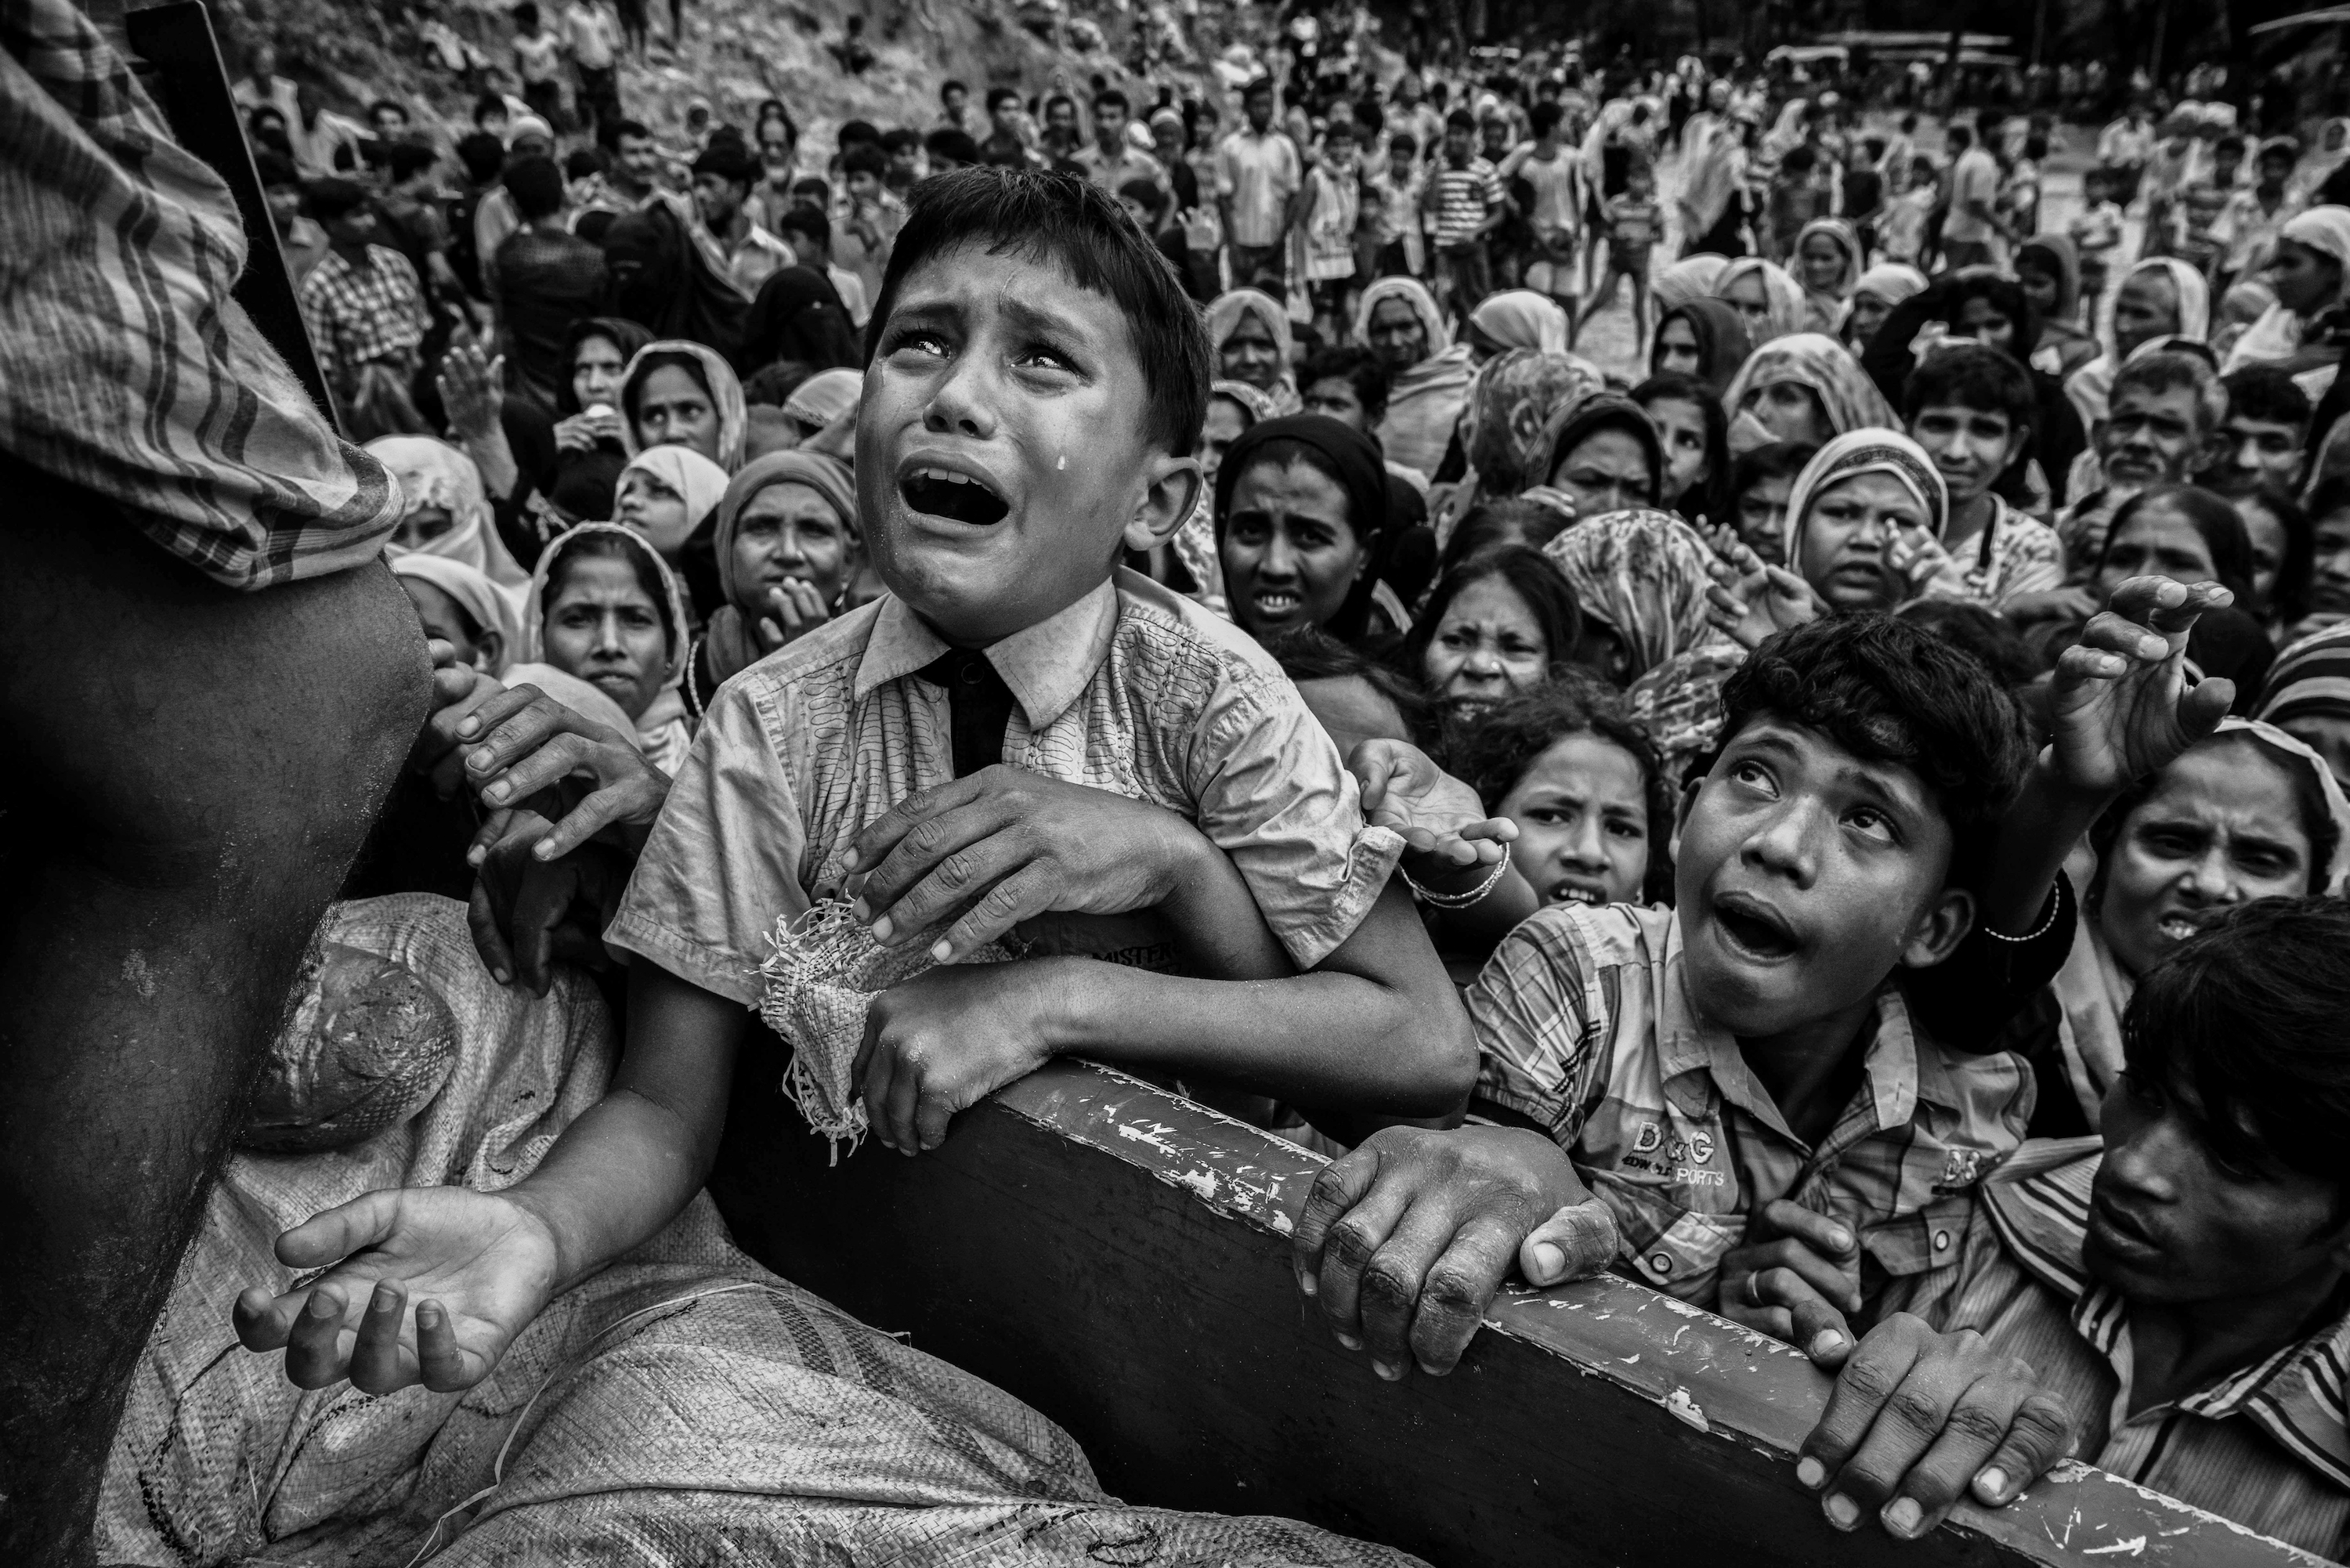 Kilenc hónappal a rohingyák elüldözése után tömegével születhetnek az erőszakban fogant gyerekek